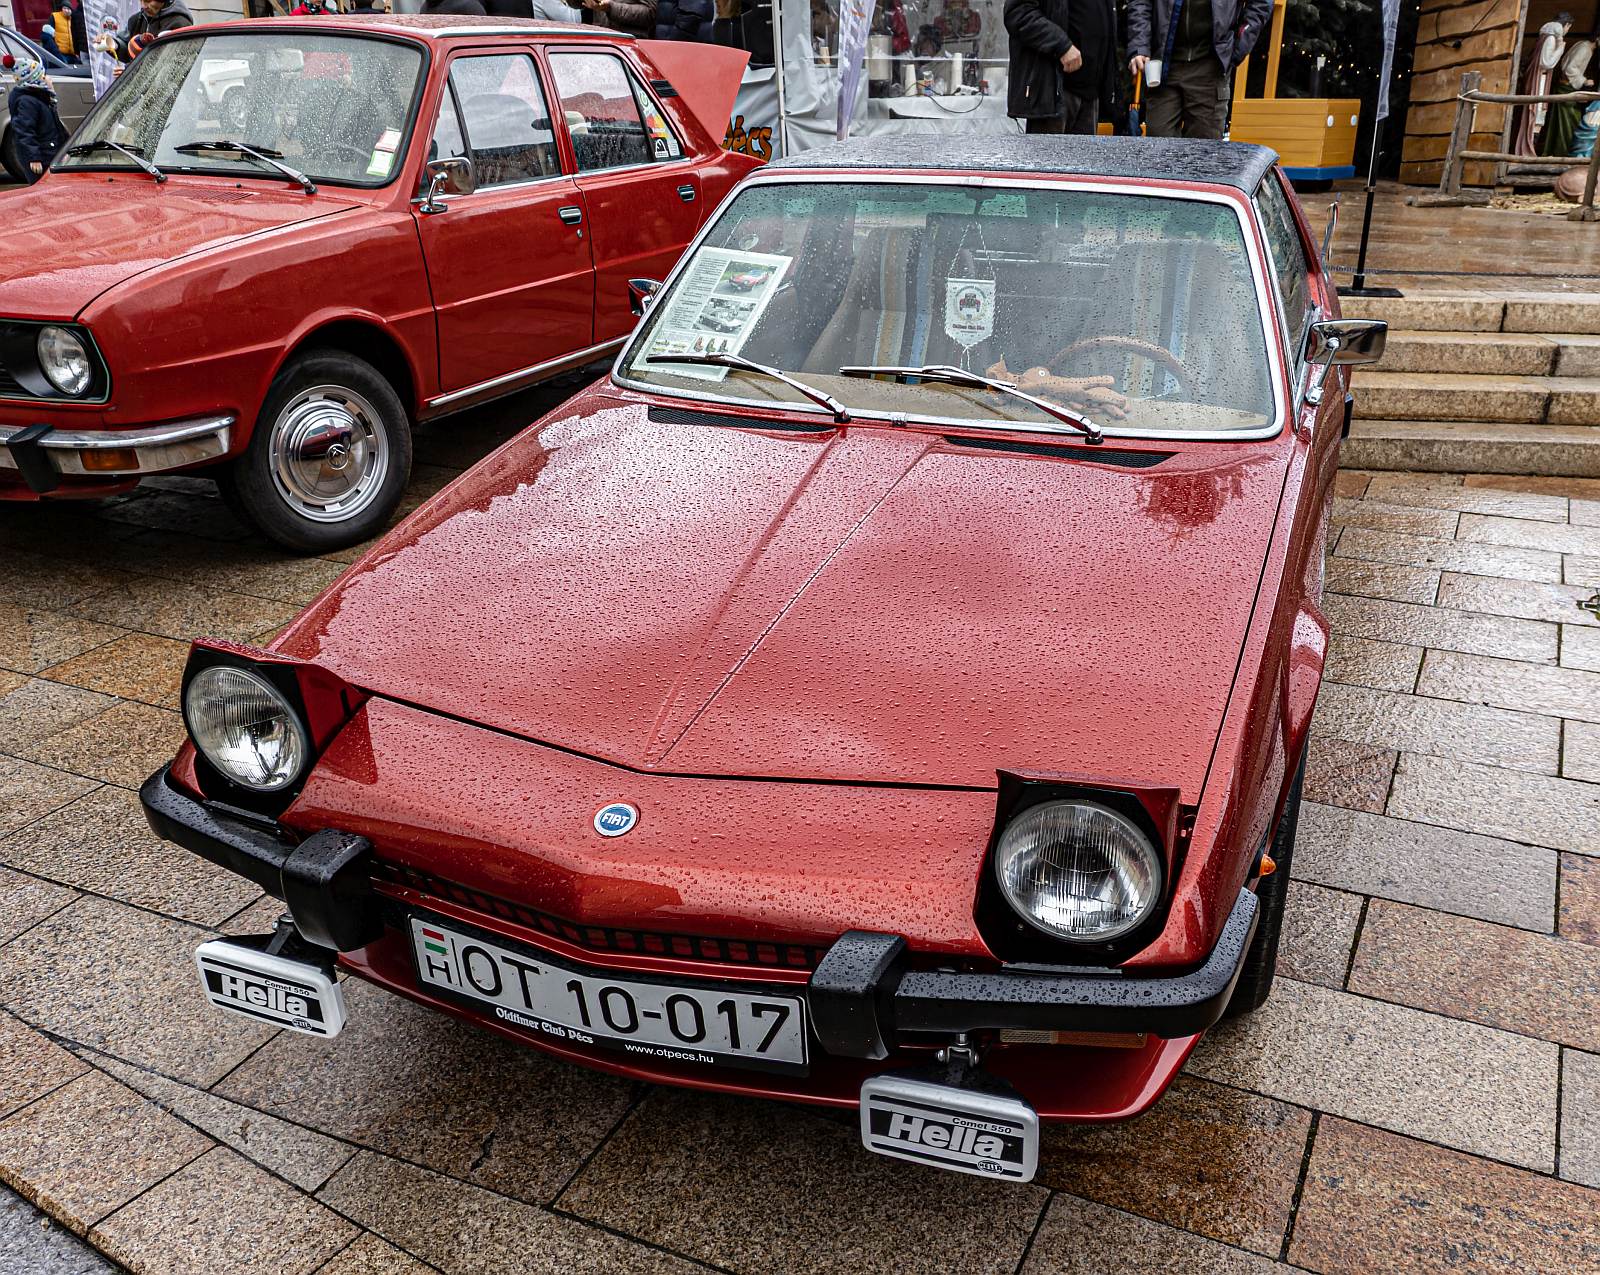 Diesen wunderbar restaurierten Fiat X1/9 habe ich in Dezember, 2022 in Rahmen einer Ausstellung mir angeschaut.